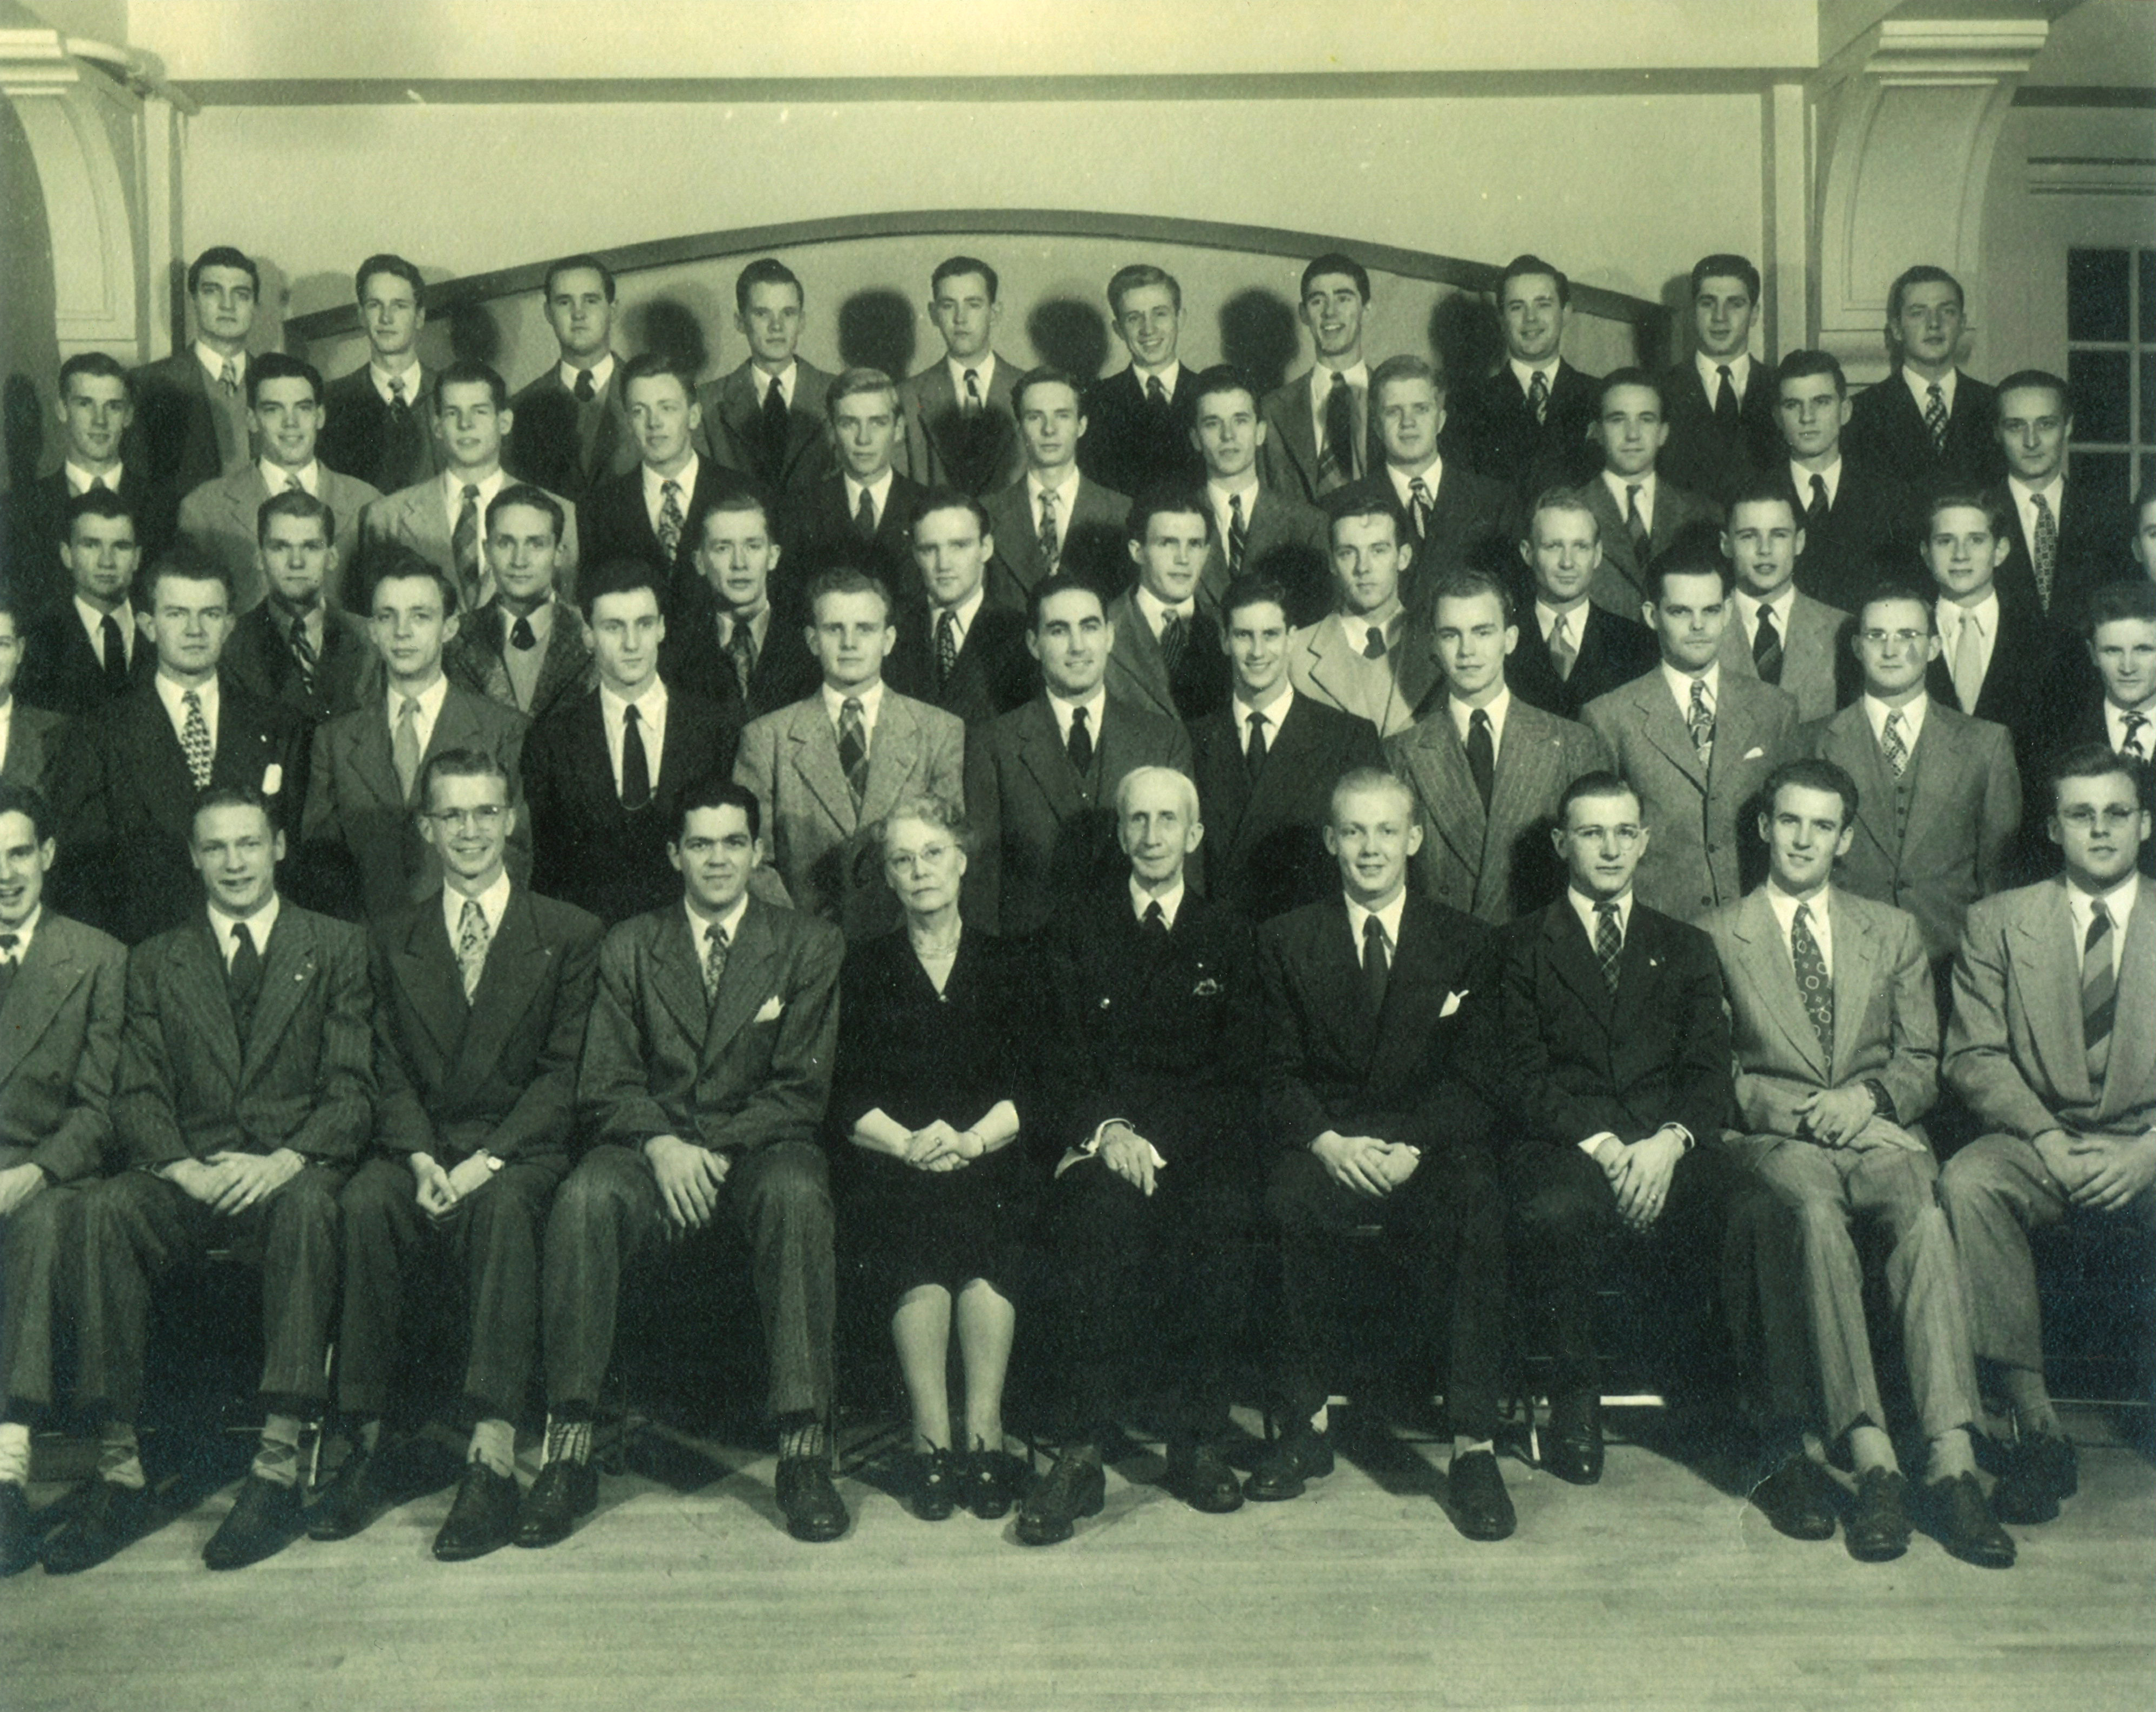  - 1947 Iowa Beta Chapter